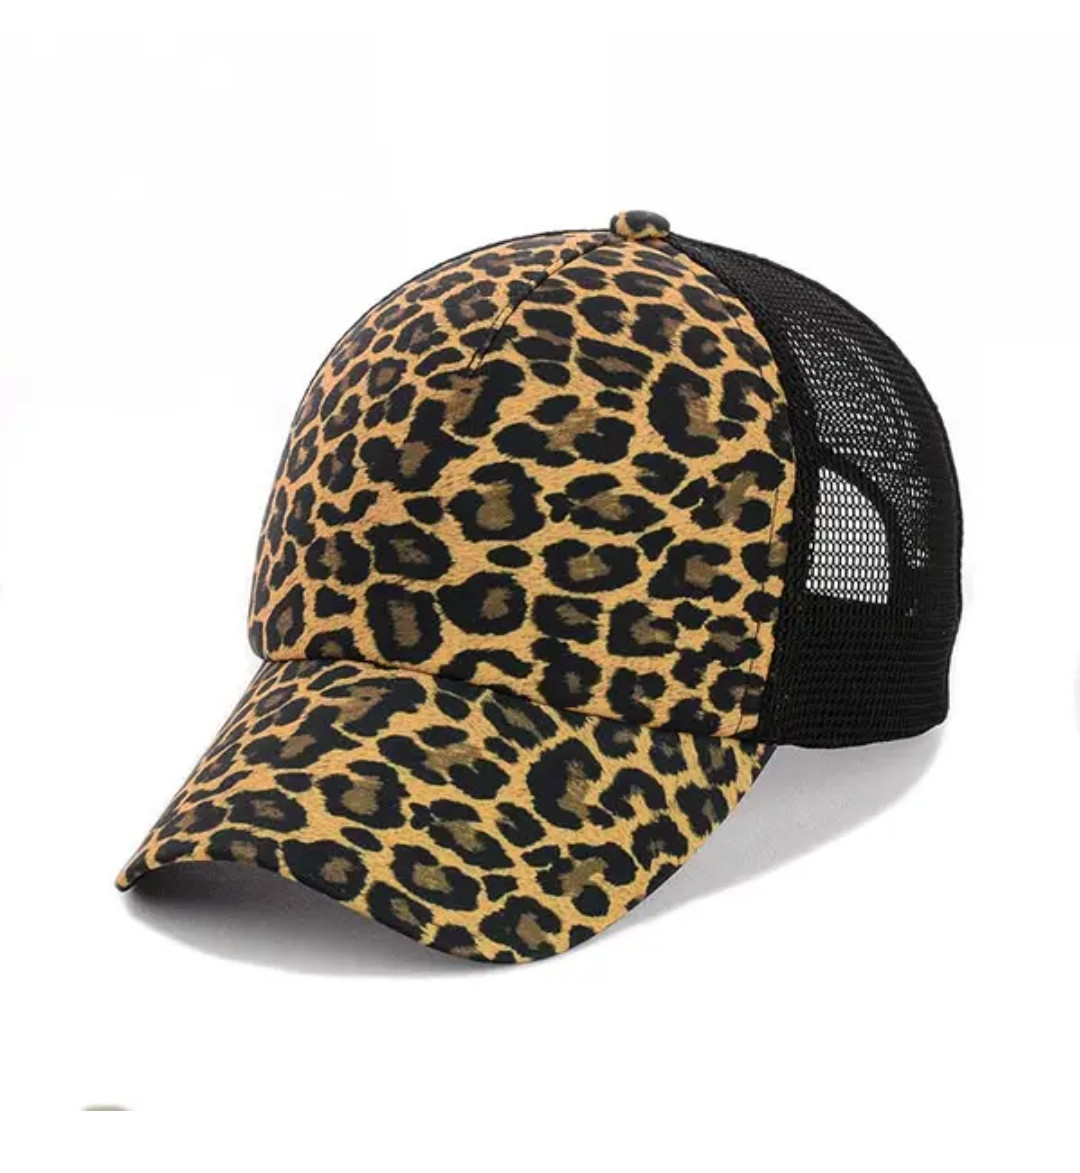 Жіноча бейсболка із сіткою "Леопард"/ жіноча кепка/жінка бейсболка/кепка леопард принт